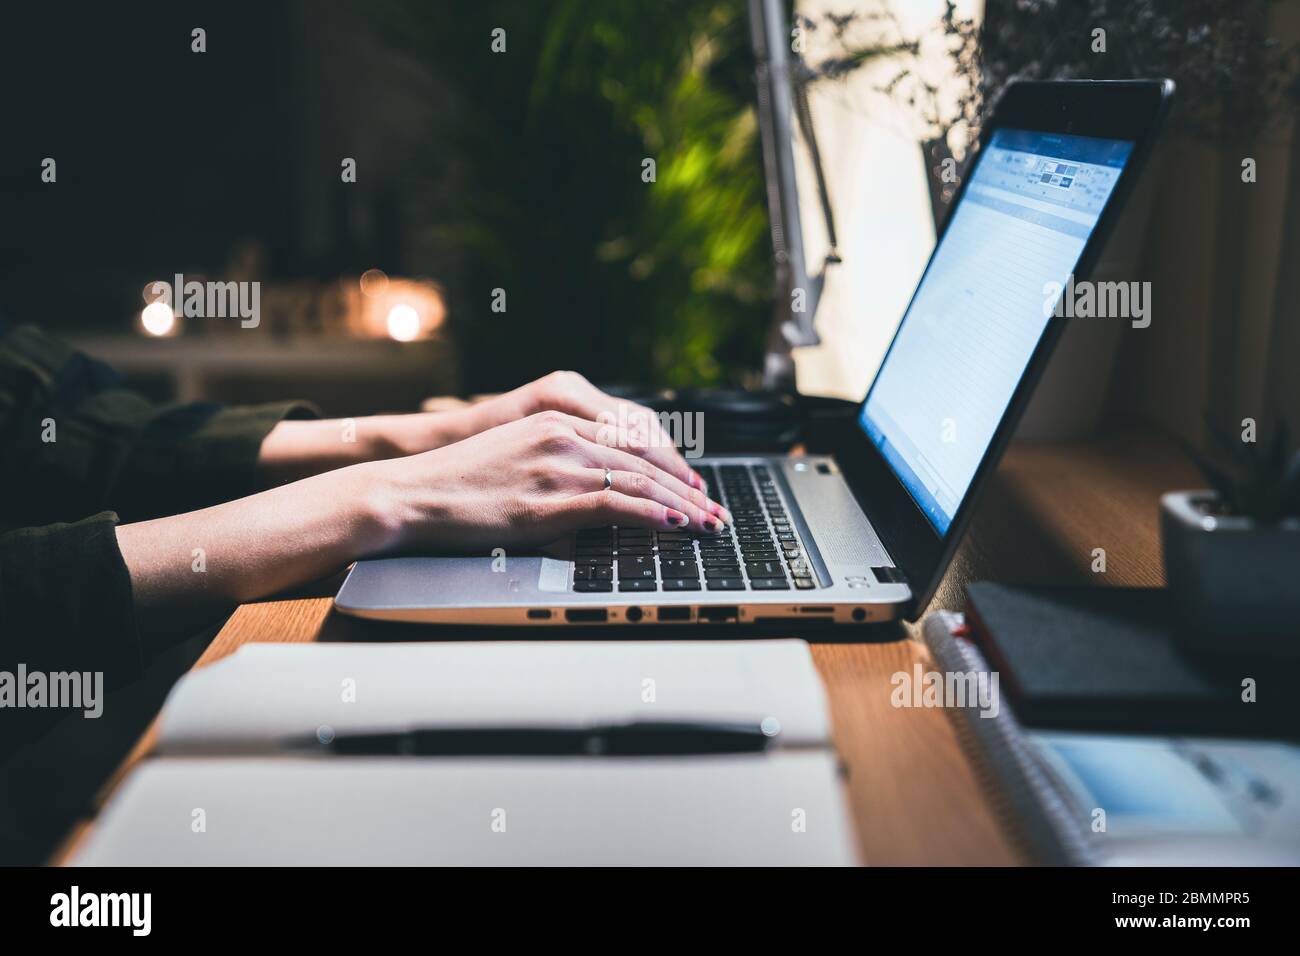 Mani di una donna che utilizza un computer portatile che lavora fuori orario alla sua scrivania in ufficio di notte. Lavora da casa con notebook e penna Foto Stock